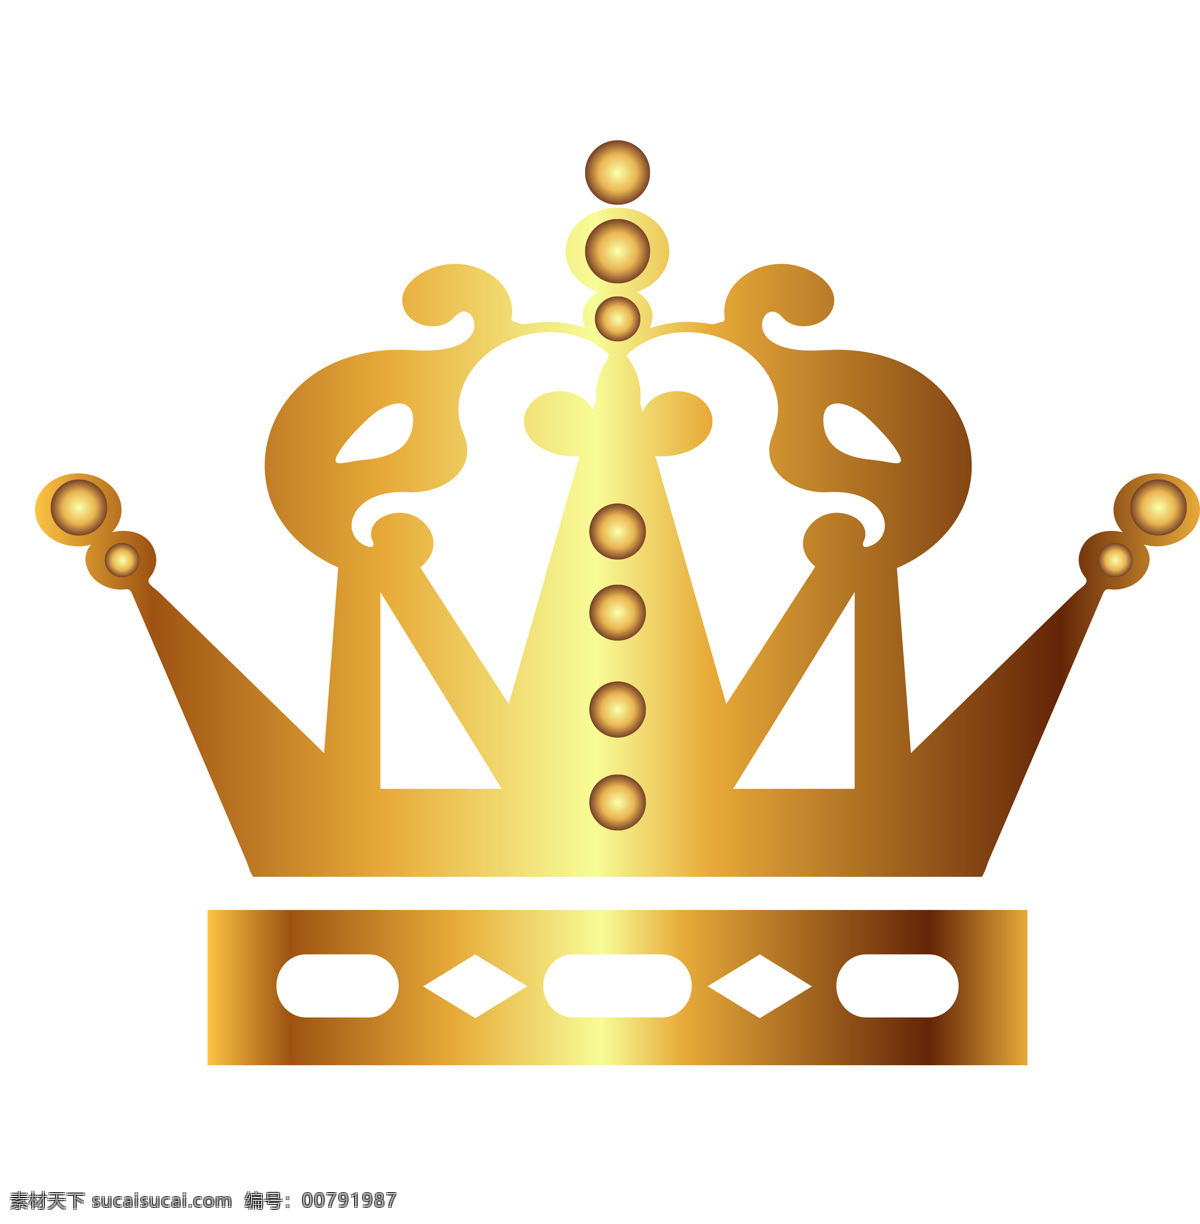 皇冠 标志 图标 图形 图形图标素材